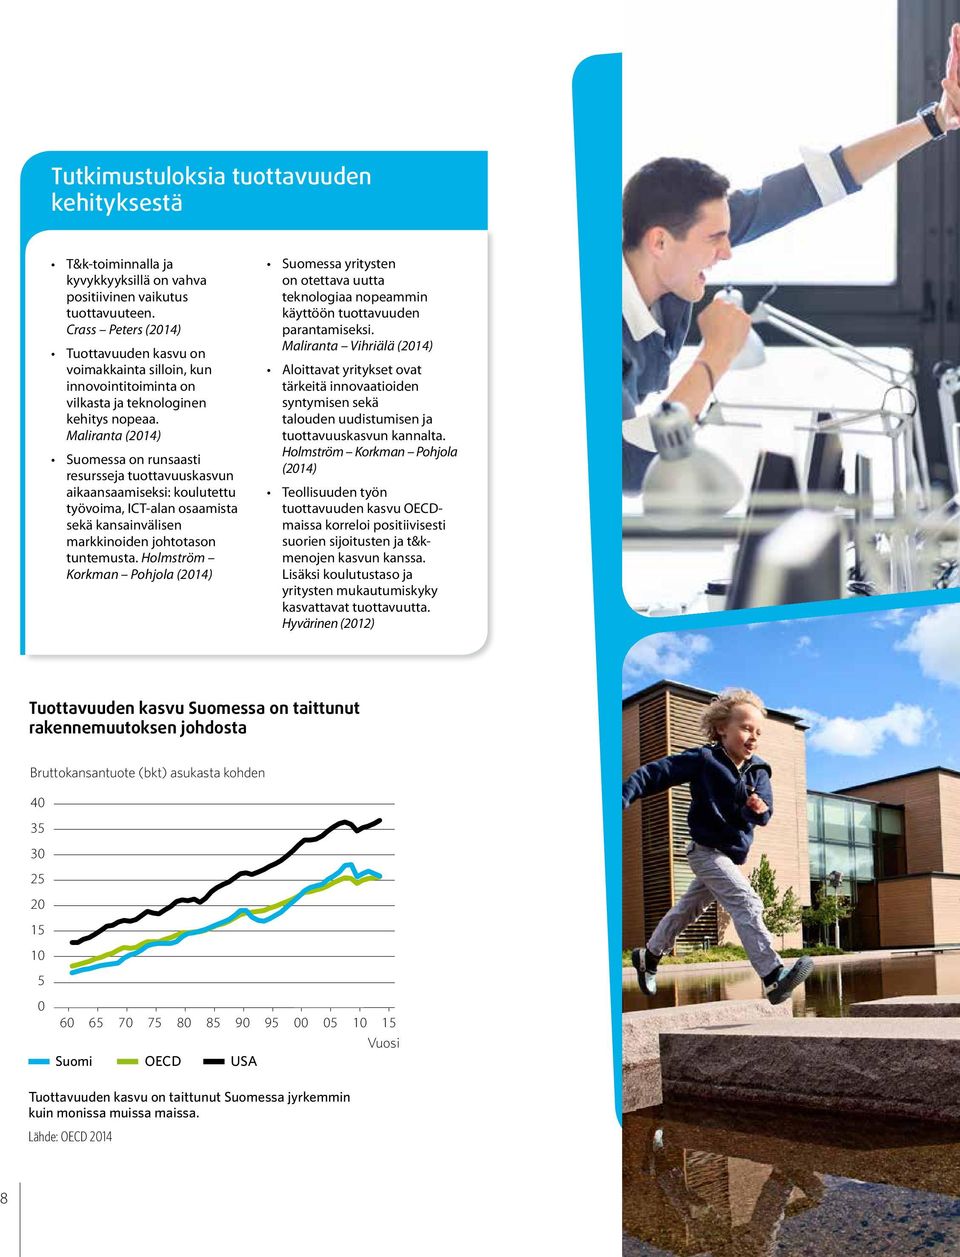 Maliranta (2014) Suomessa on runsaasti resursseja tuottavuuskasvun aikaansaamiseksi: koulutettu työvoima, ICT-alan osaamista sekä kansainvälisen markkinoiden johtotason tuntemusta.